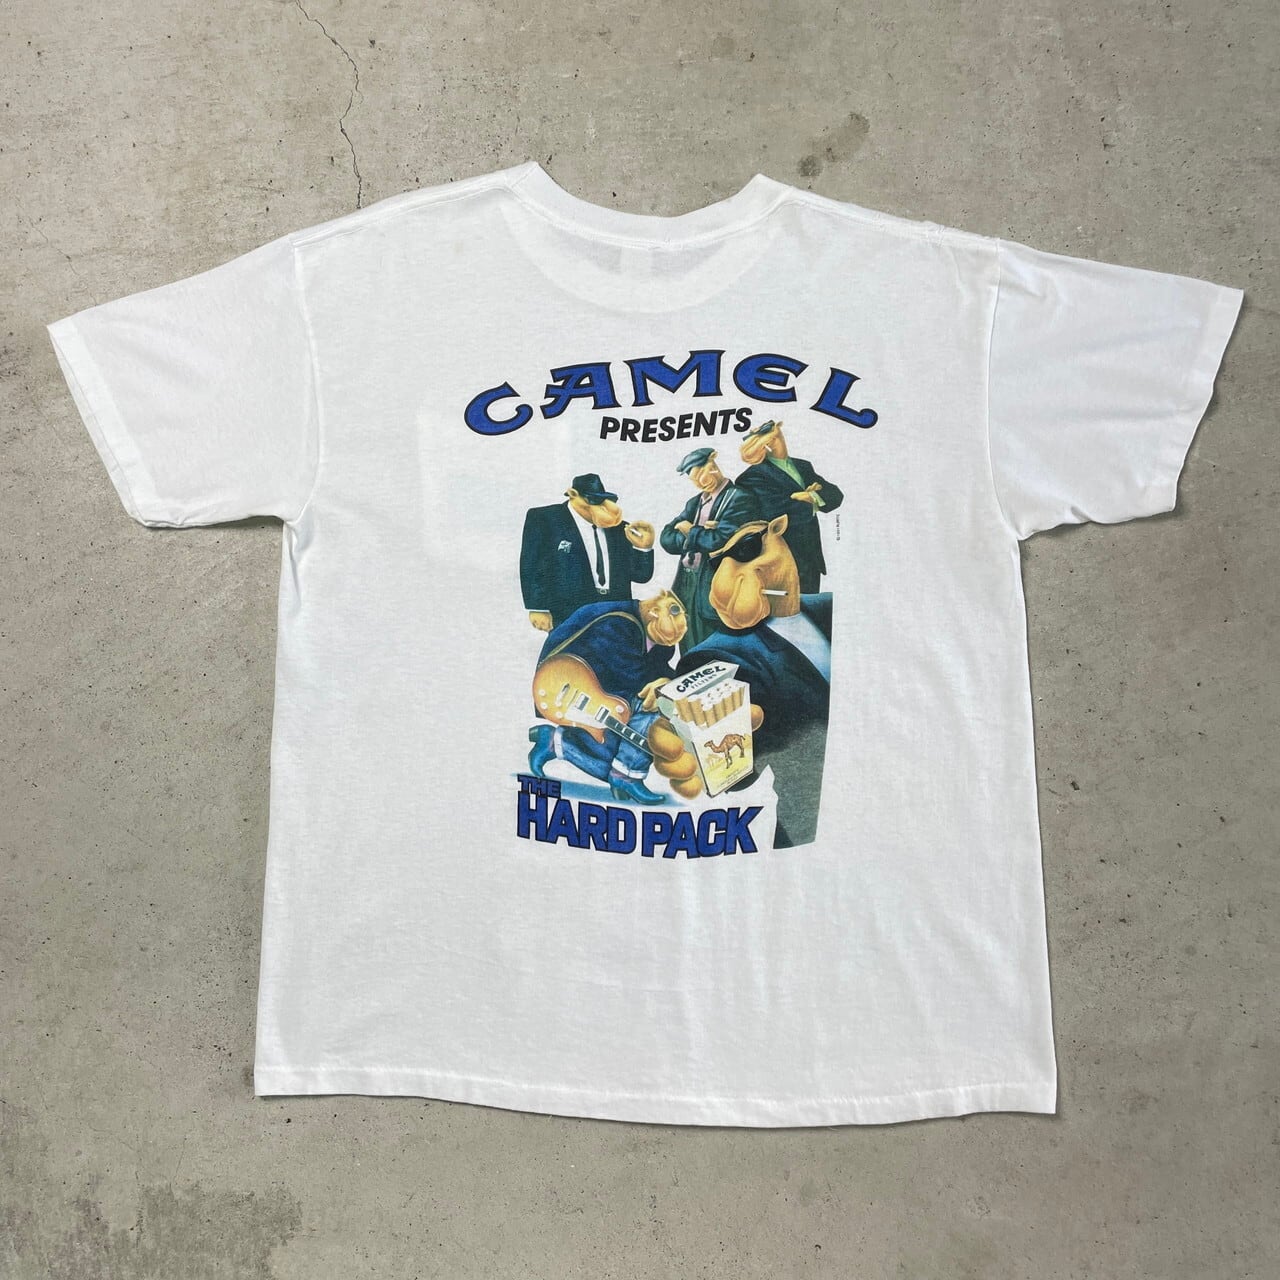 CAMEL TROPHY キャメル トロフィー ビンテージ Tシャツ 4WD